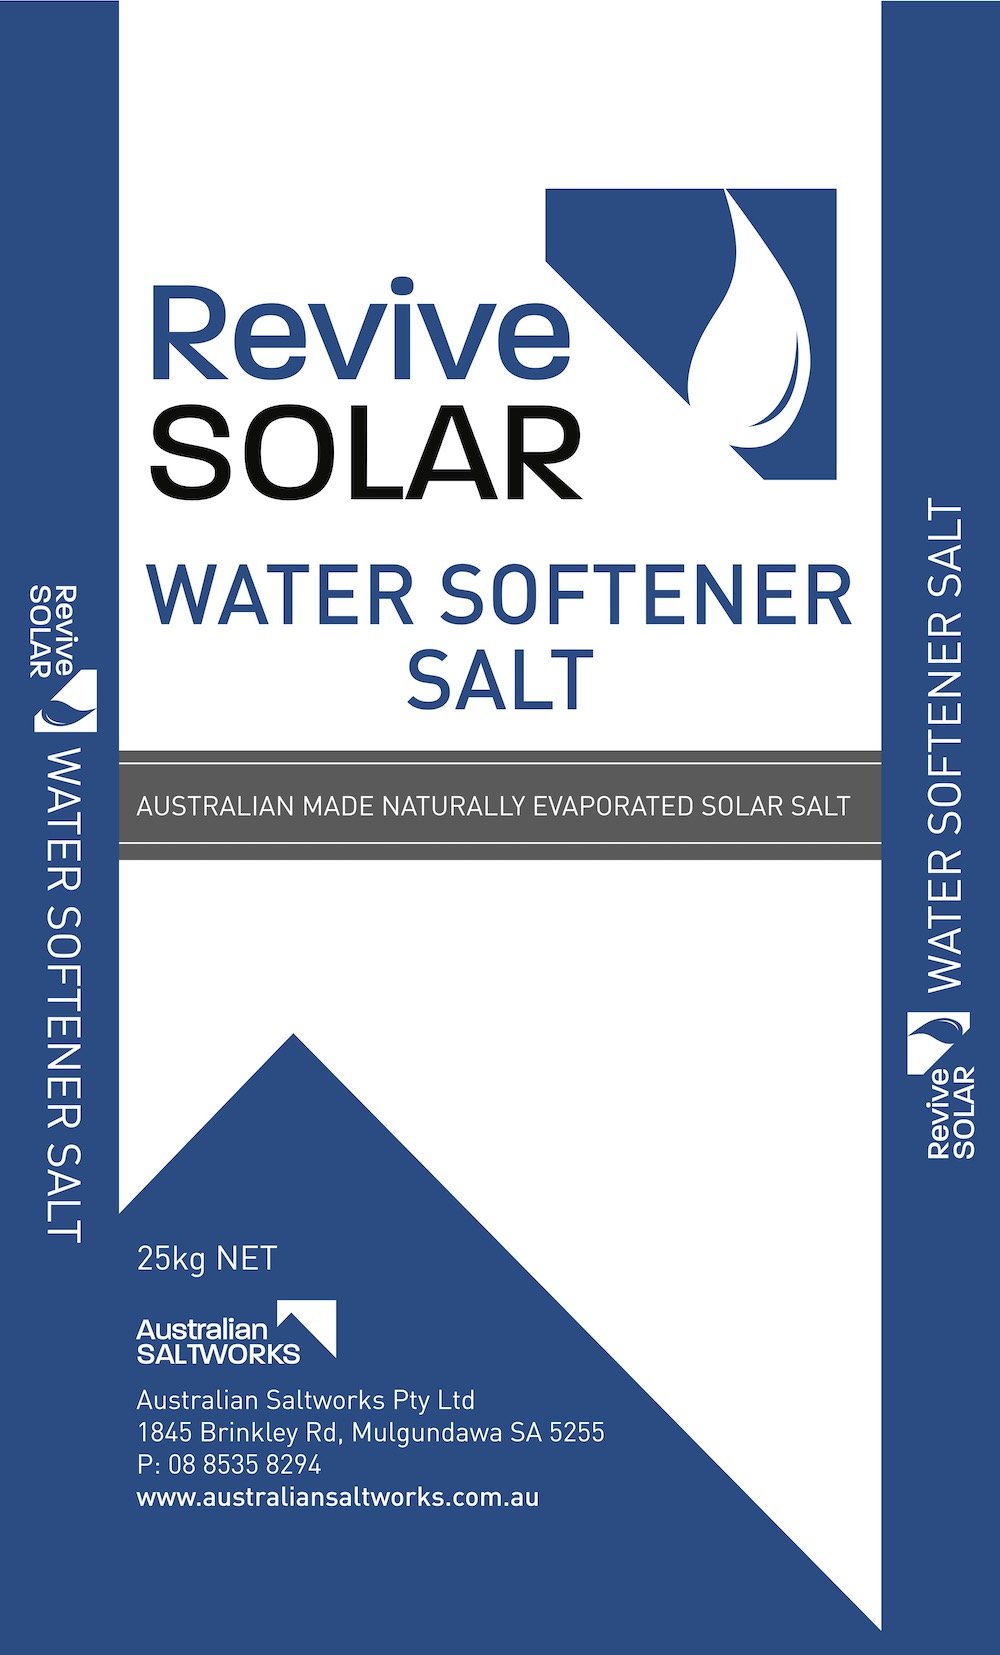 Revive Solar Water Softener Salt.jpg